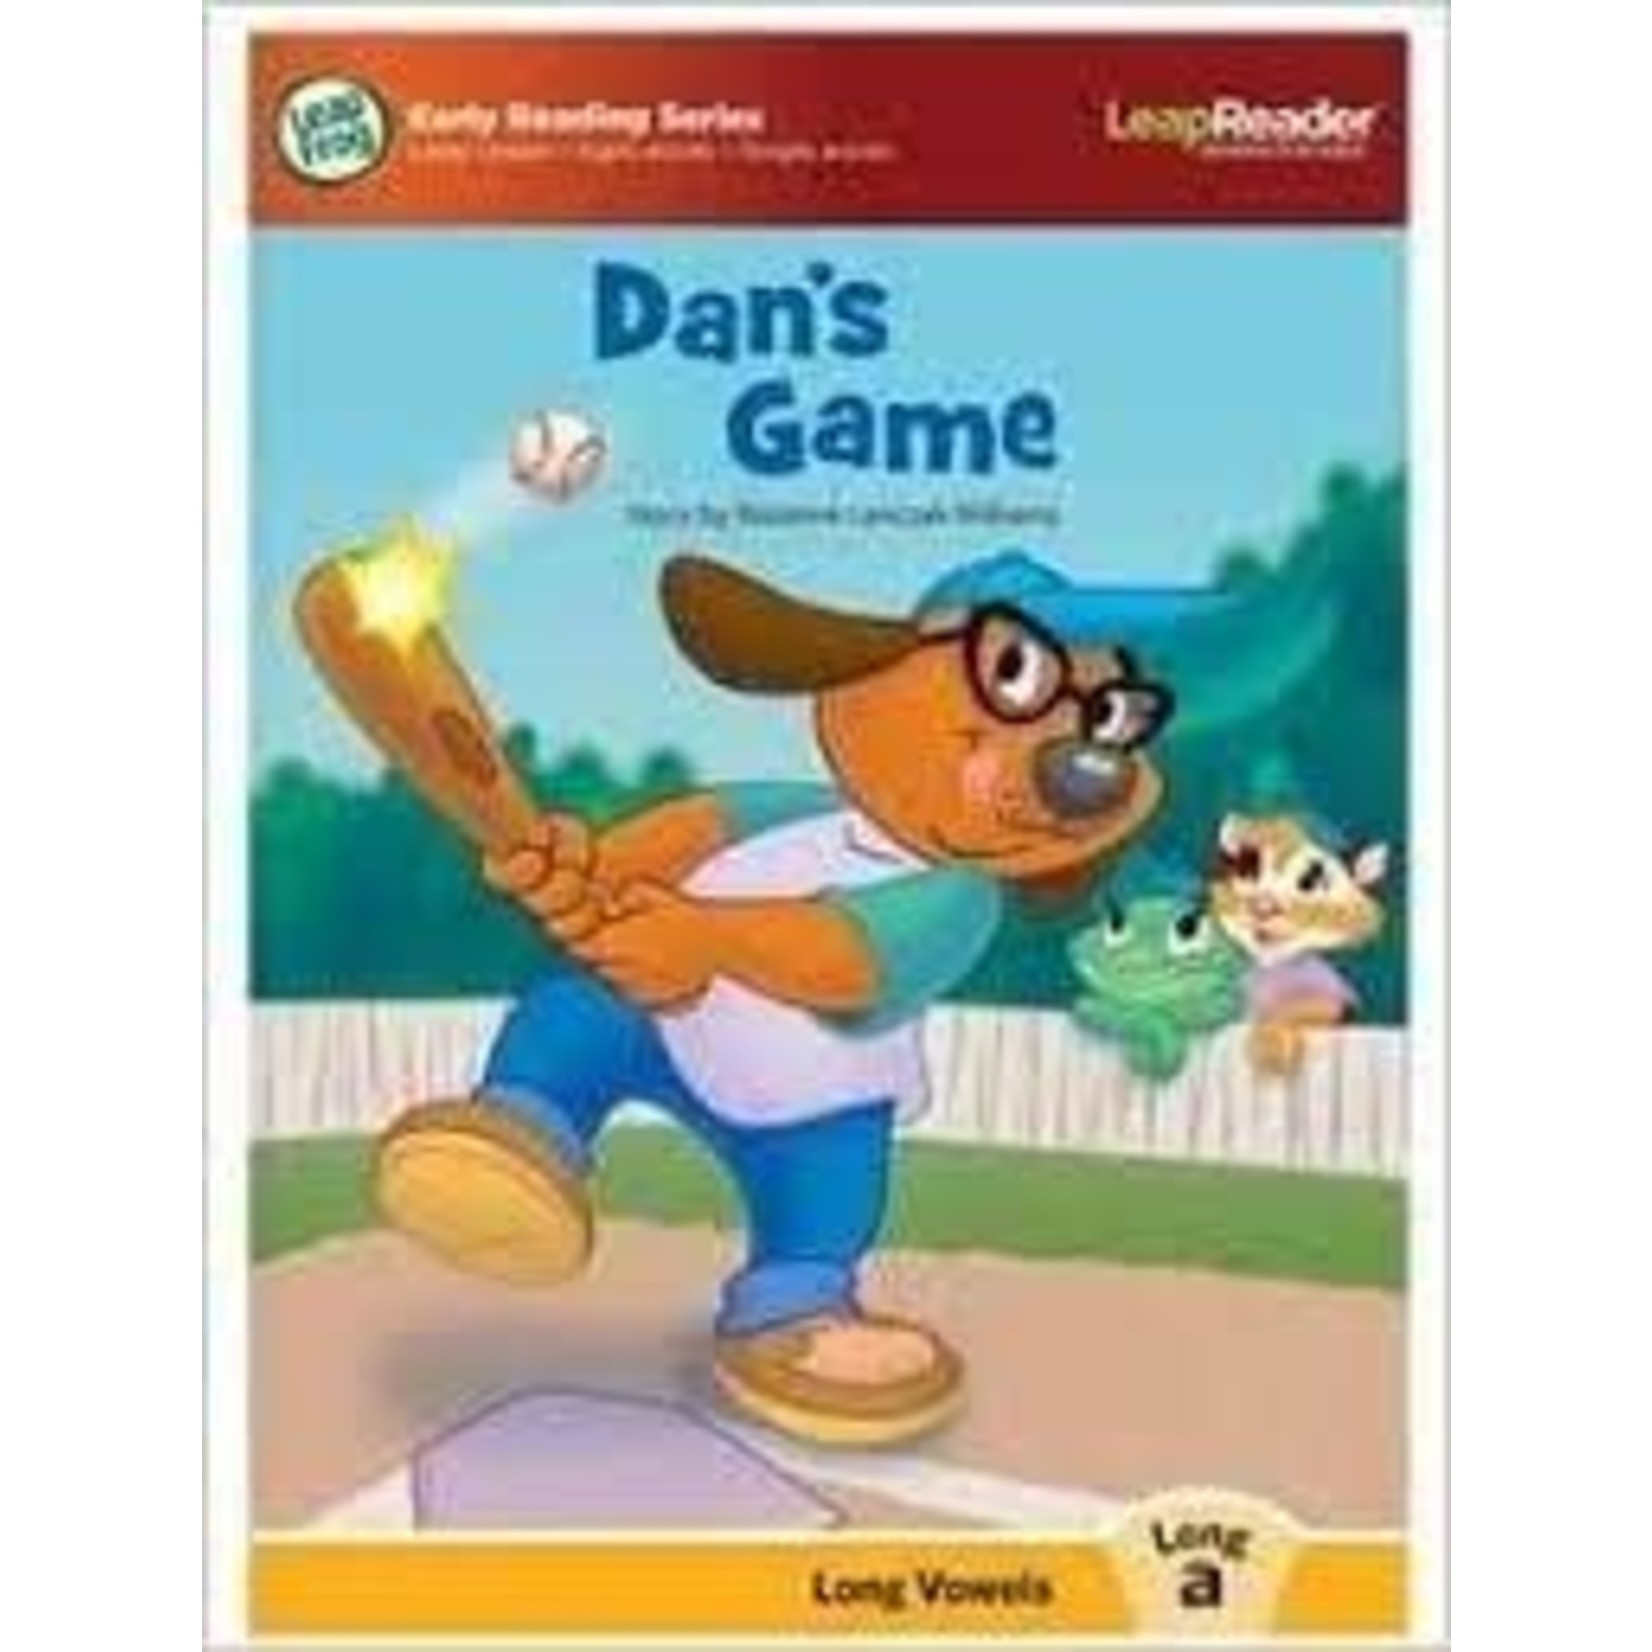 Leap Reader - Dan's Game